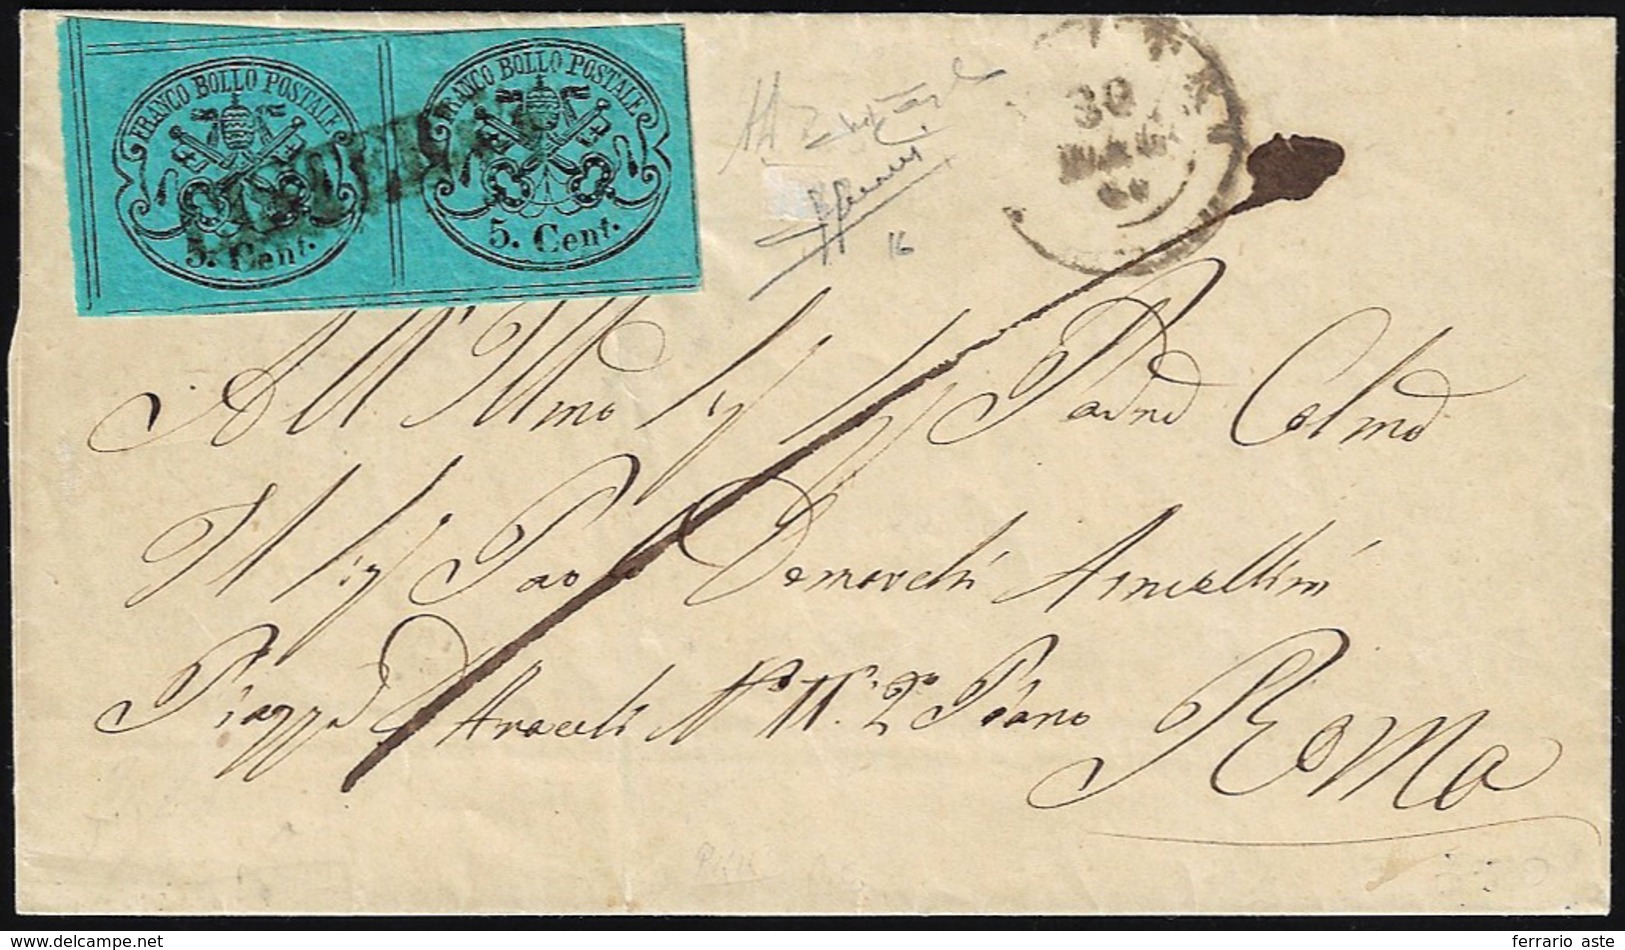 CISTERNA, Punti 13 - 5 Cent. (16), Coppia, Su Sovracoperta Di Lettera Del 30/5/1867, Datario Di Vell... - Papal States